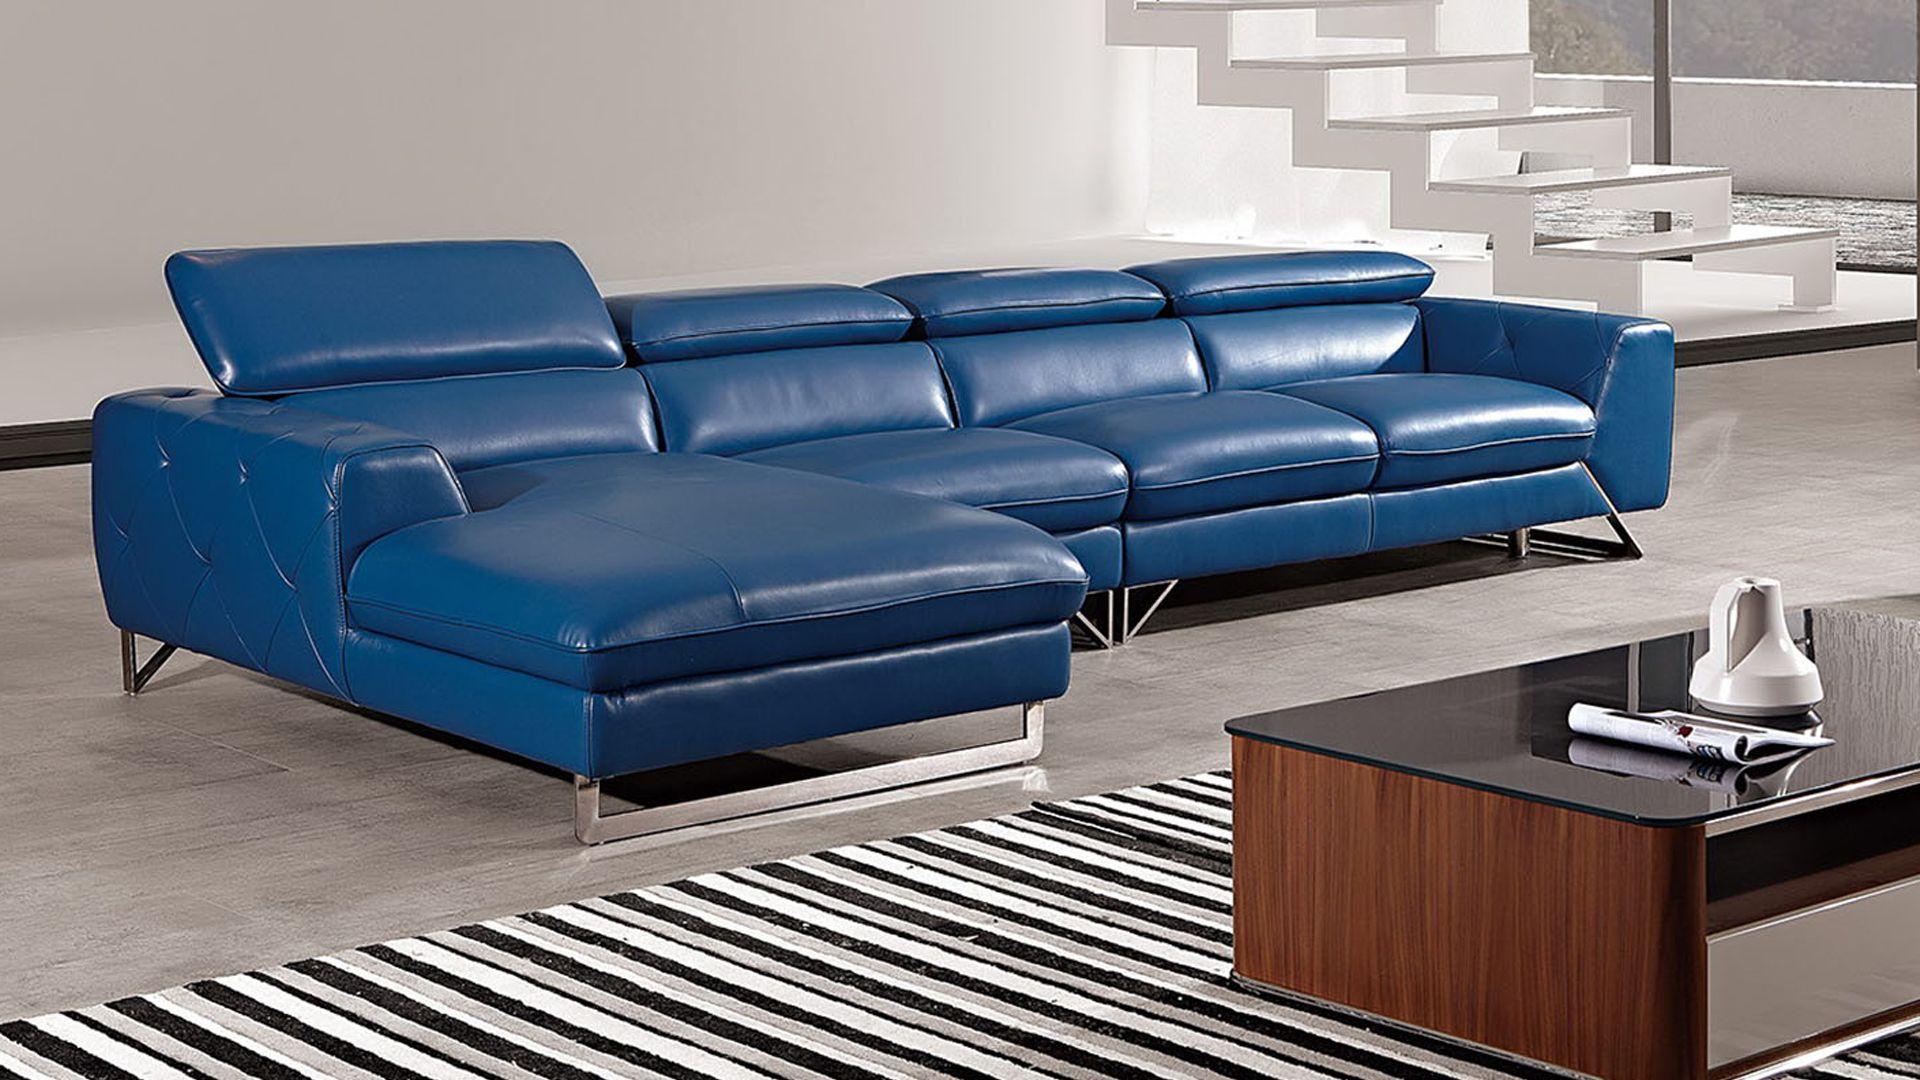 Contemporary, Modern Sectional Sofa EK-L030-BLUE EK-L030R-BLUE in Blue Full Leather